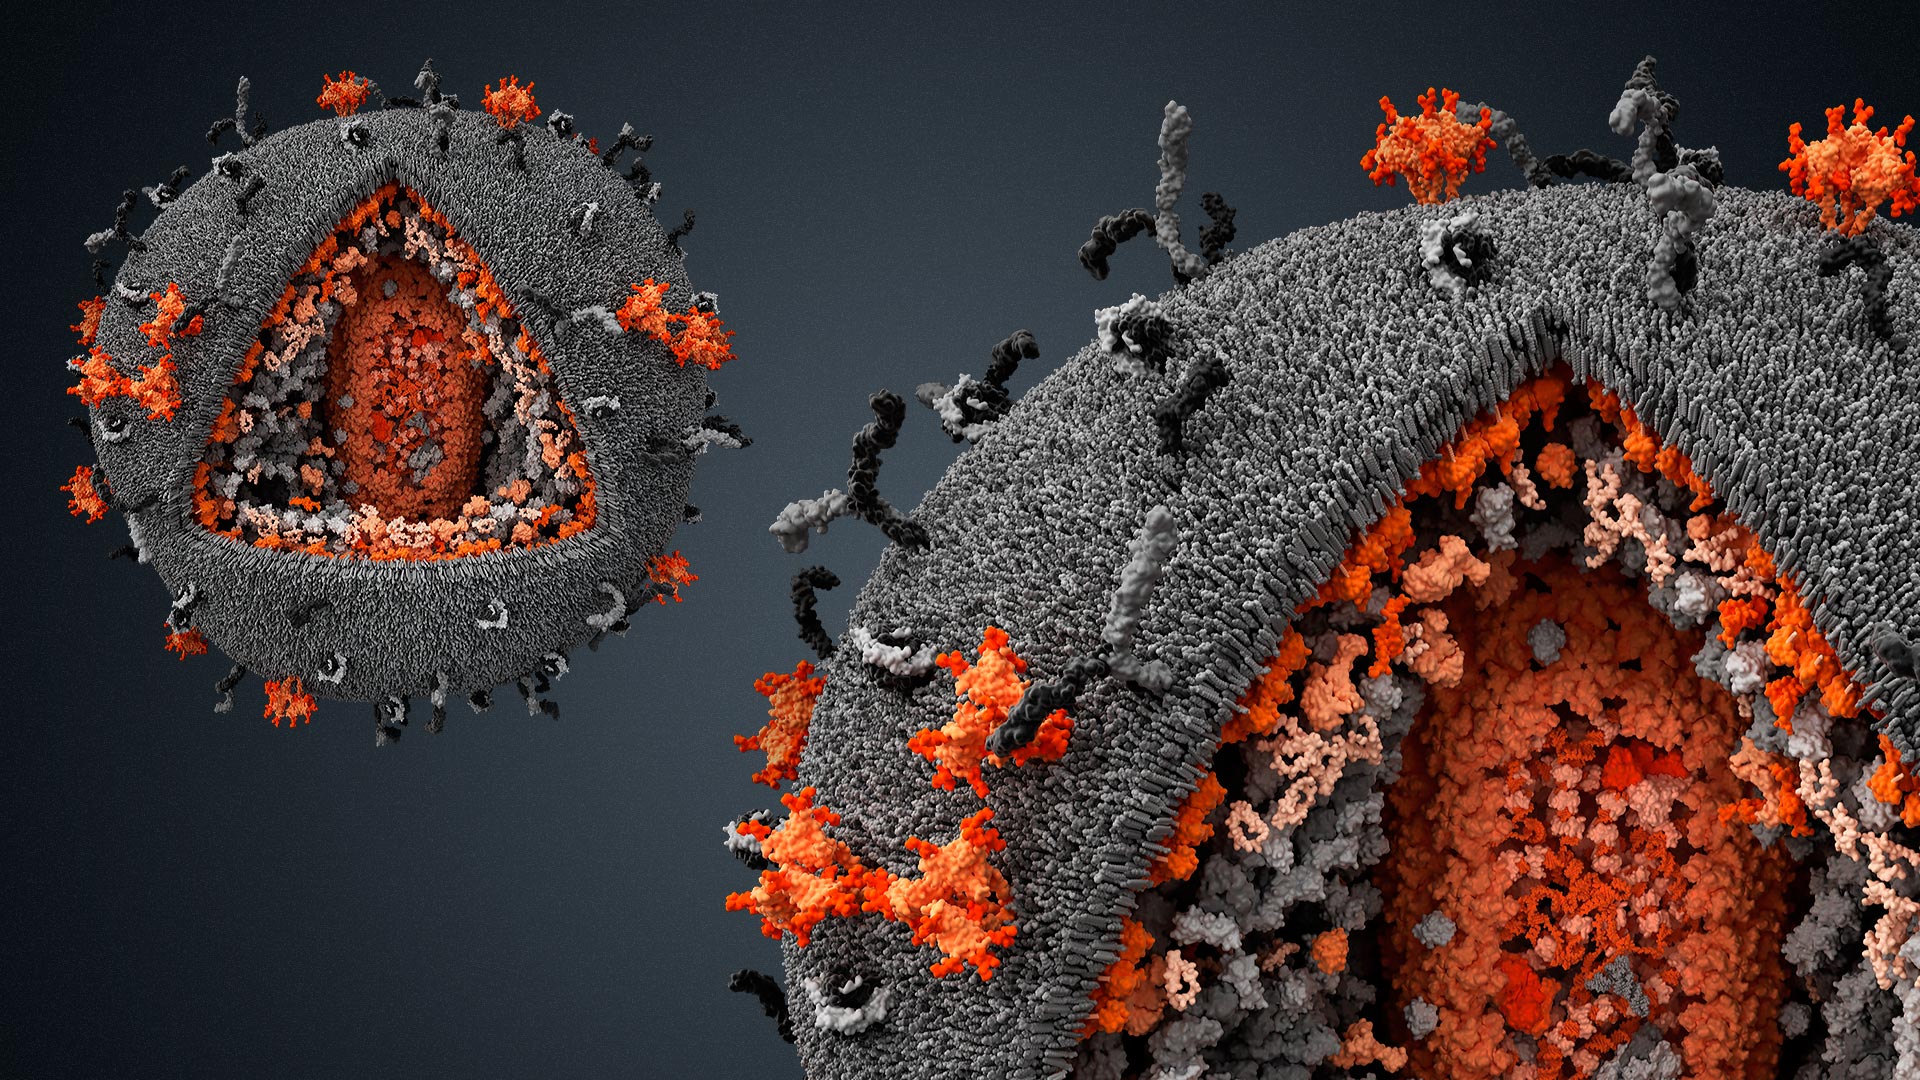 Koronavirüsün Hücrelere Saldırsı Görüntülendi